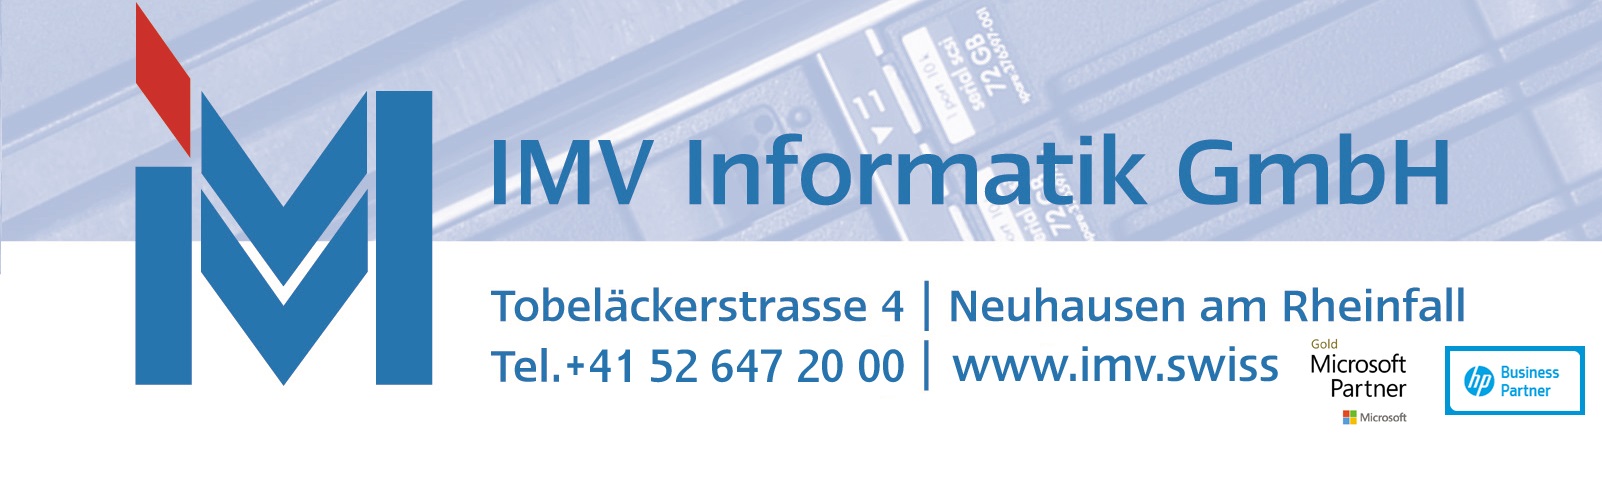 IMV Informatik GmbH